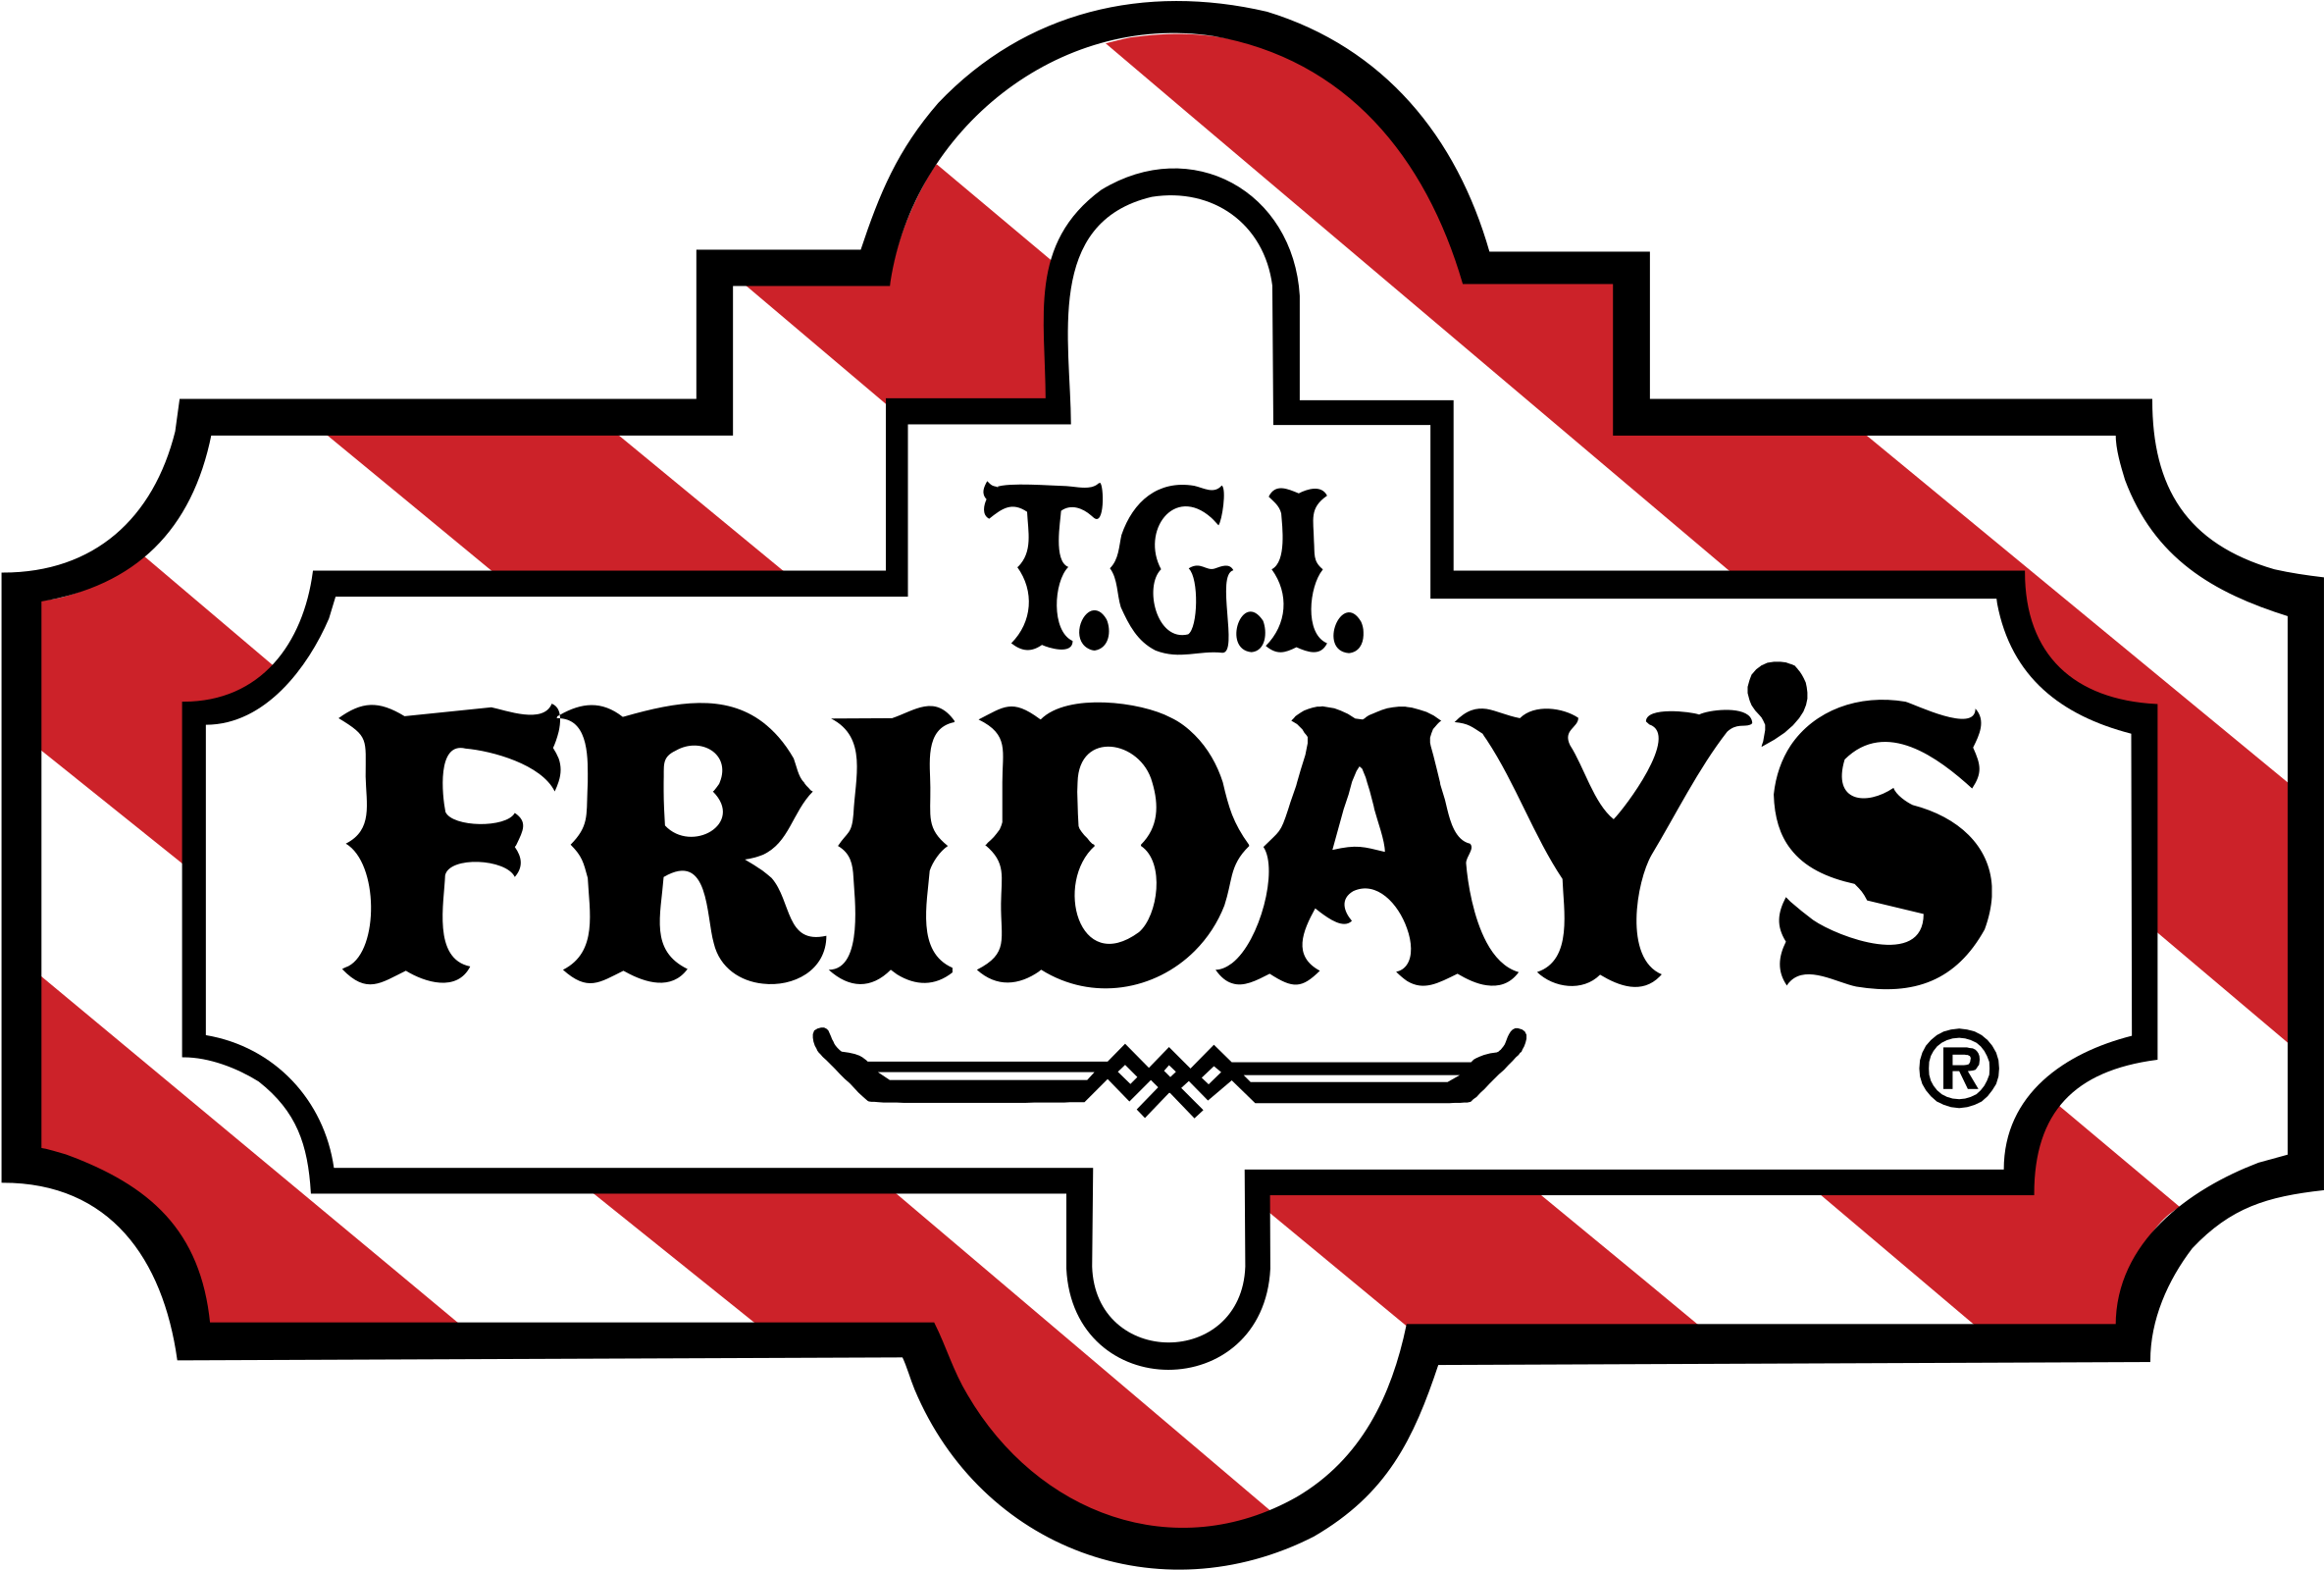 T G I Fridays Logo